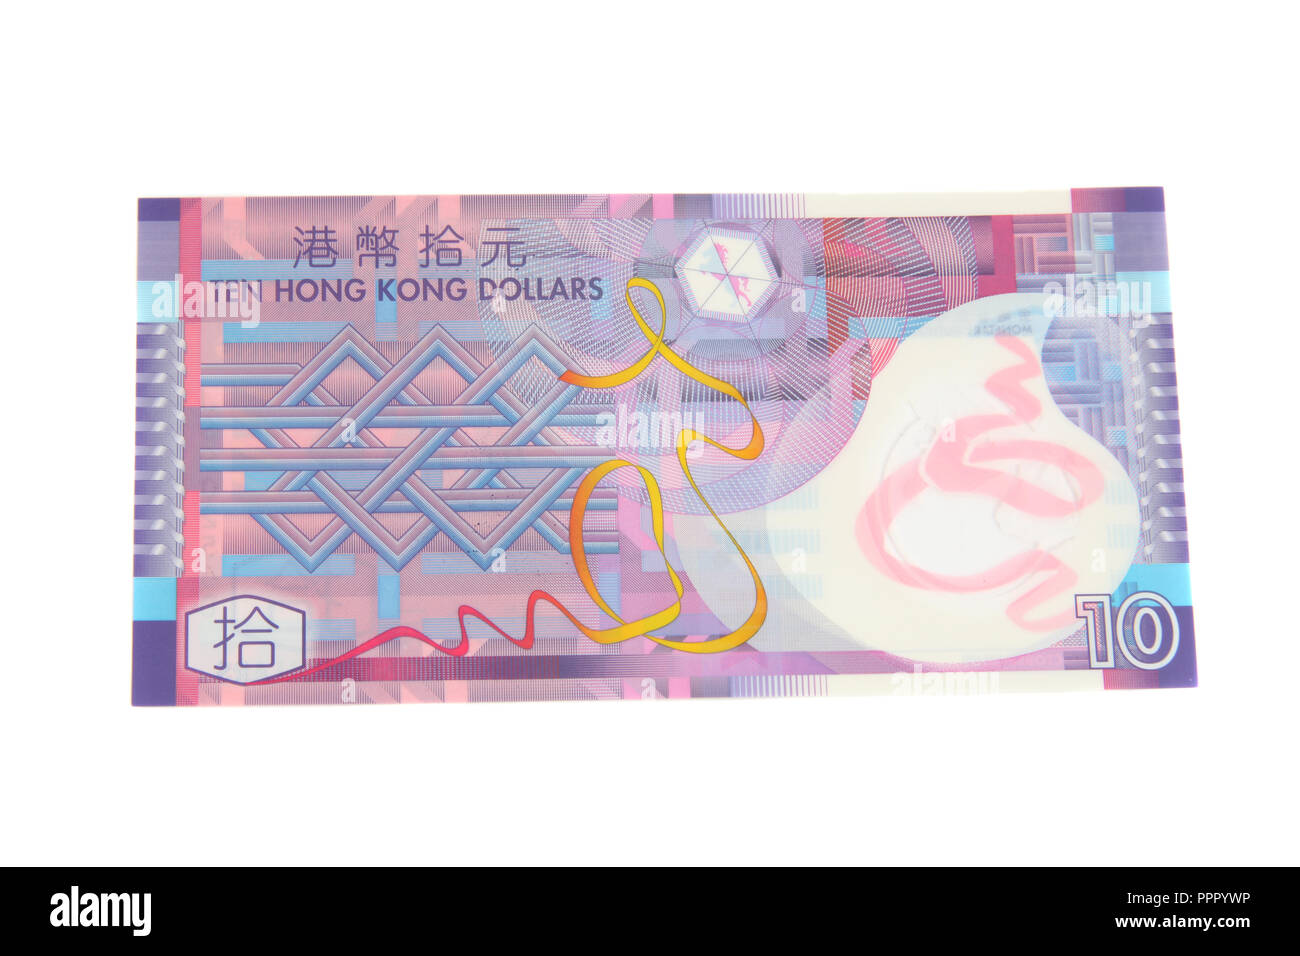 A 10 Hong Kong Dollar bank note Stock Photo